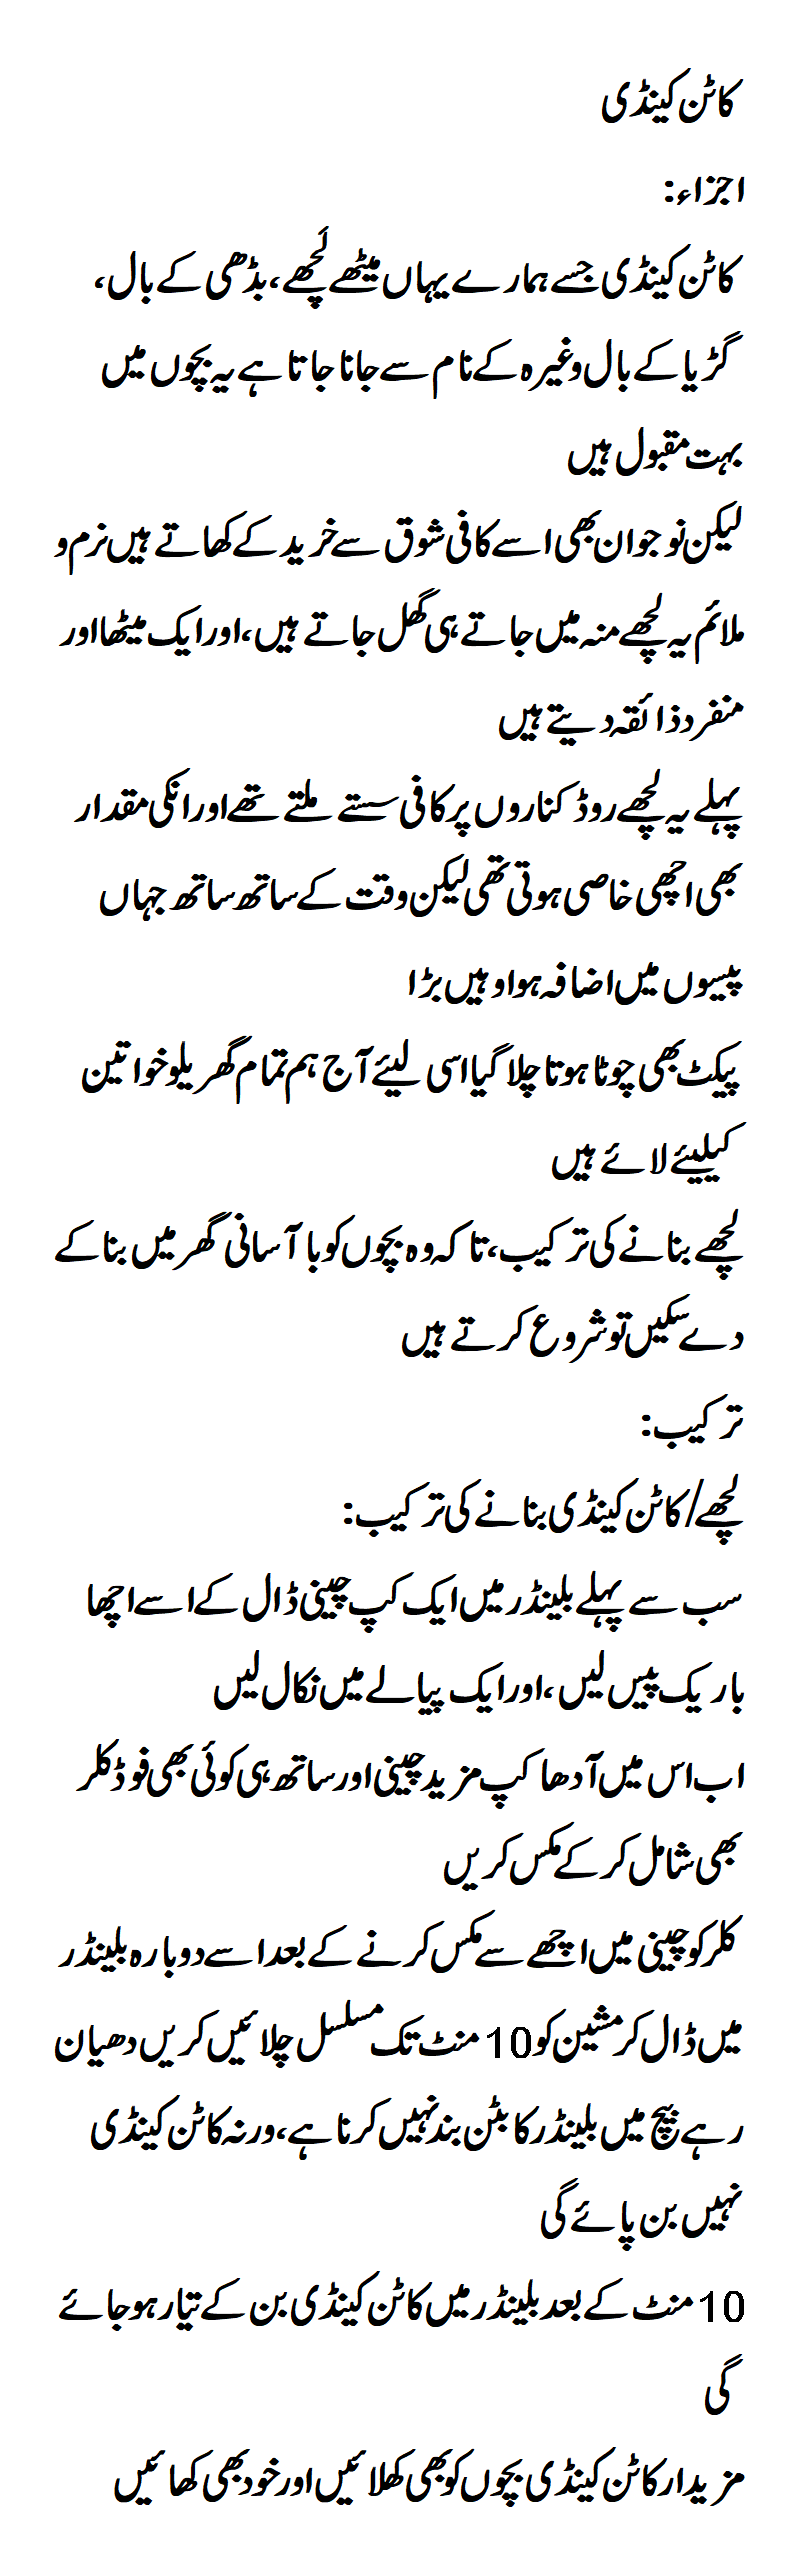 Cotton Candy Recipe in Urdu